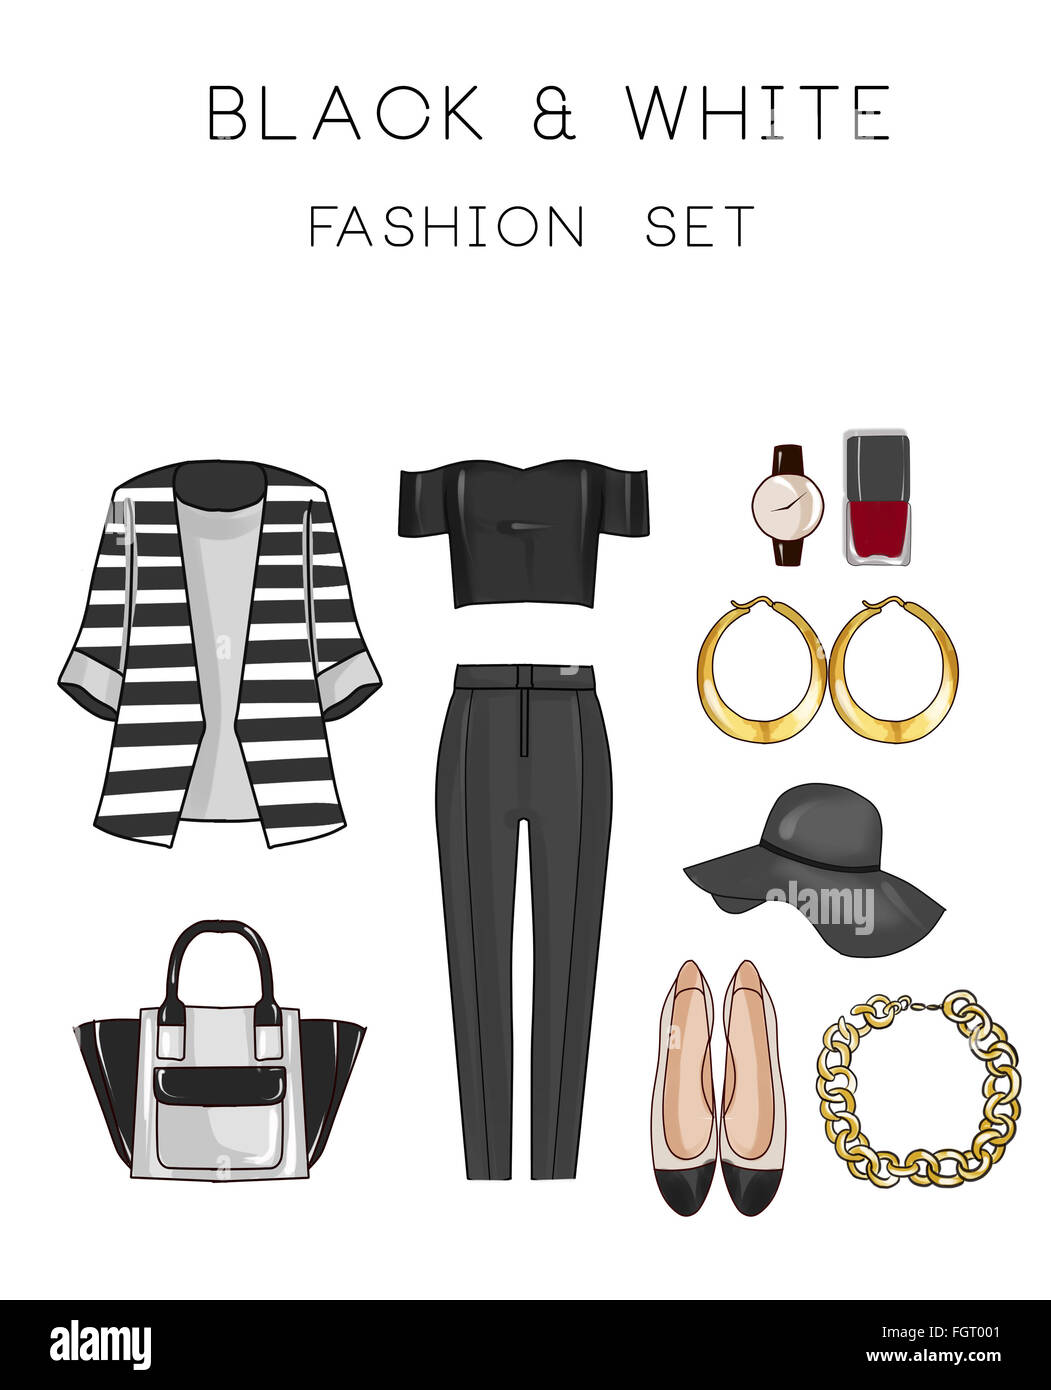 Ensemble de la mode vetements femme et accessoires - Noir et blanc -  costume pantalon, haut, les chaussures plates, bijoux, sac Photo Stock -  Alamy